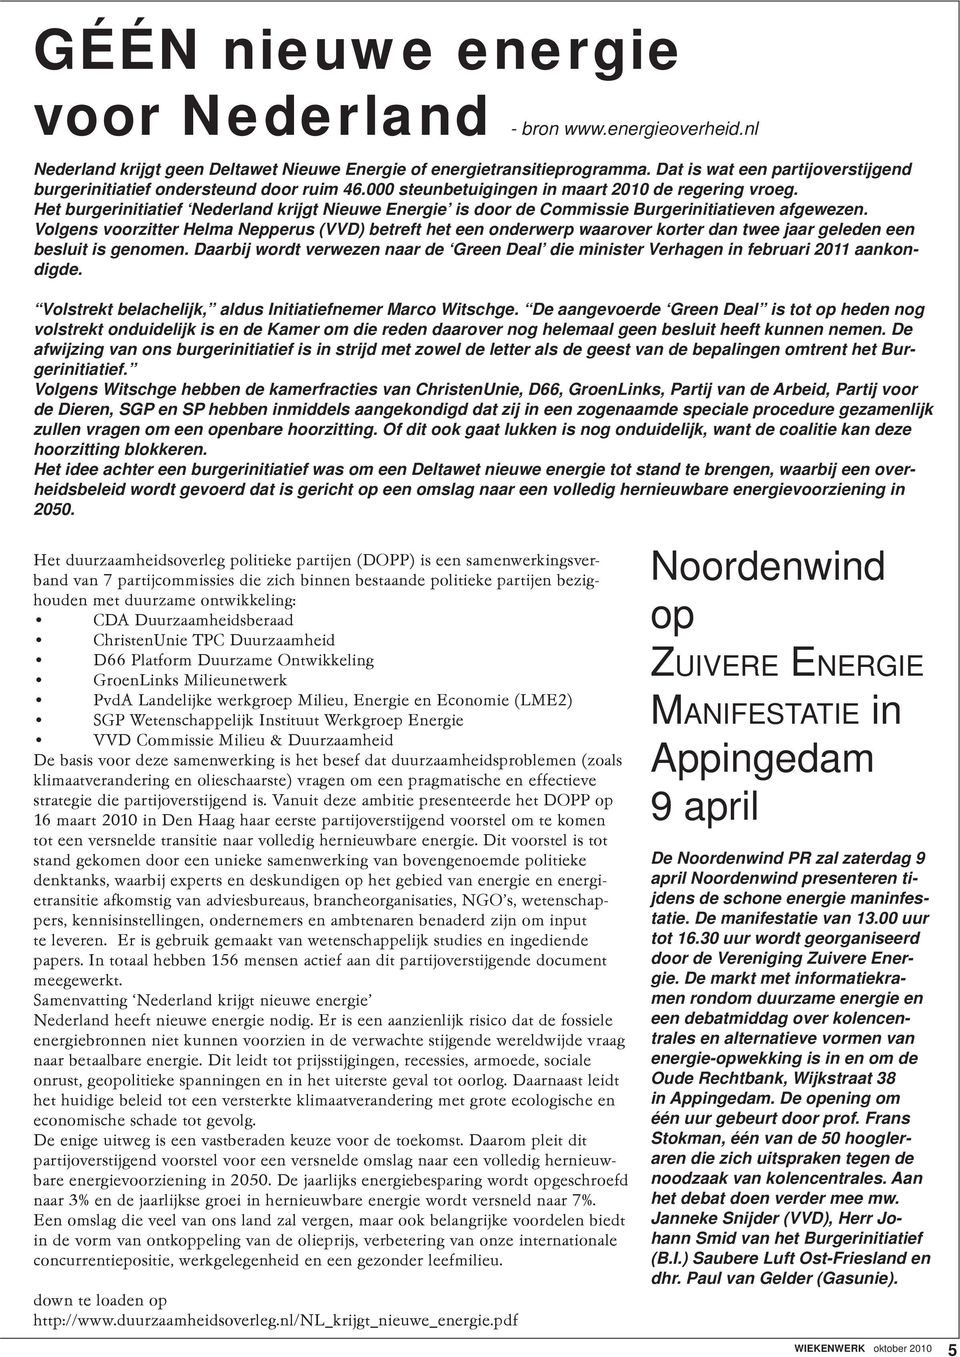 Het burgerinitiatief Nederland krijgt Nieuwe Energie is door de Commissie Burgerinitiatieven afgewezen.